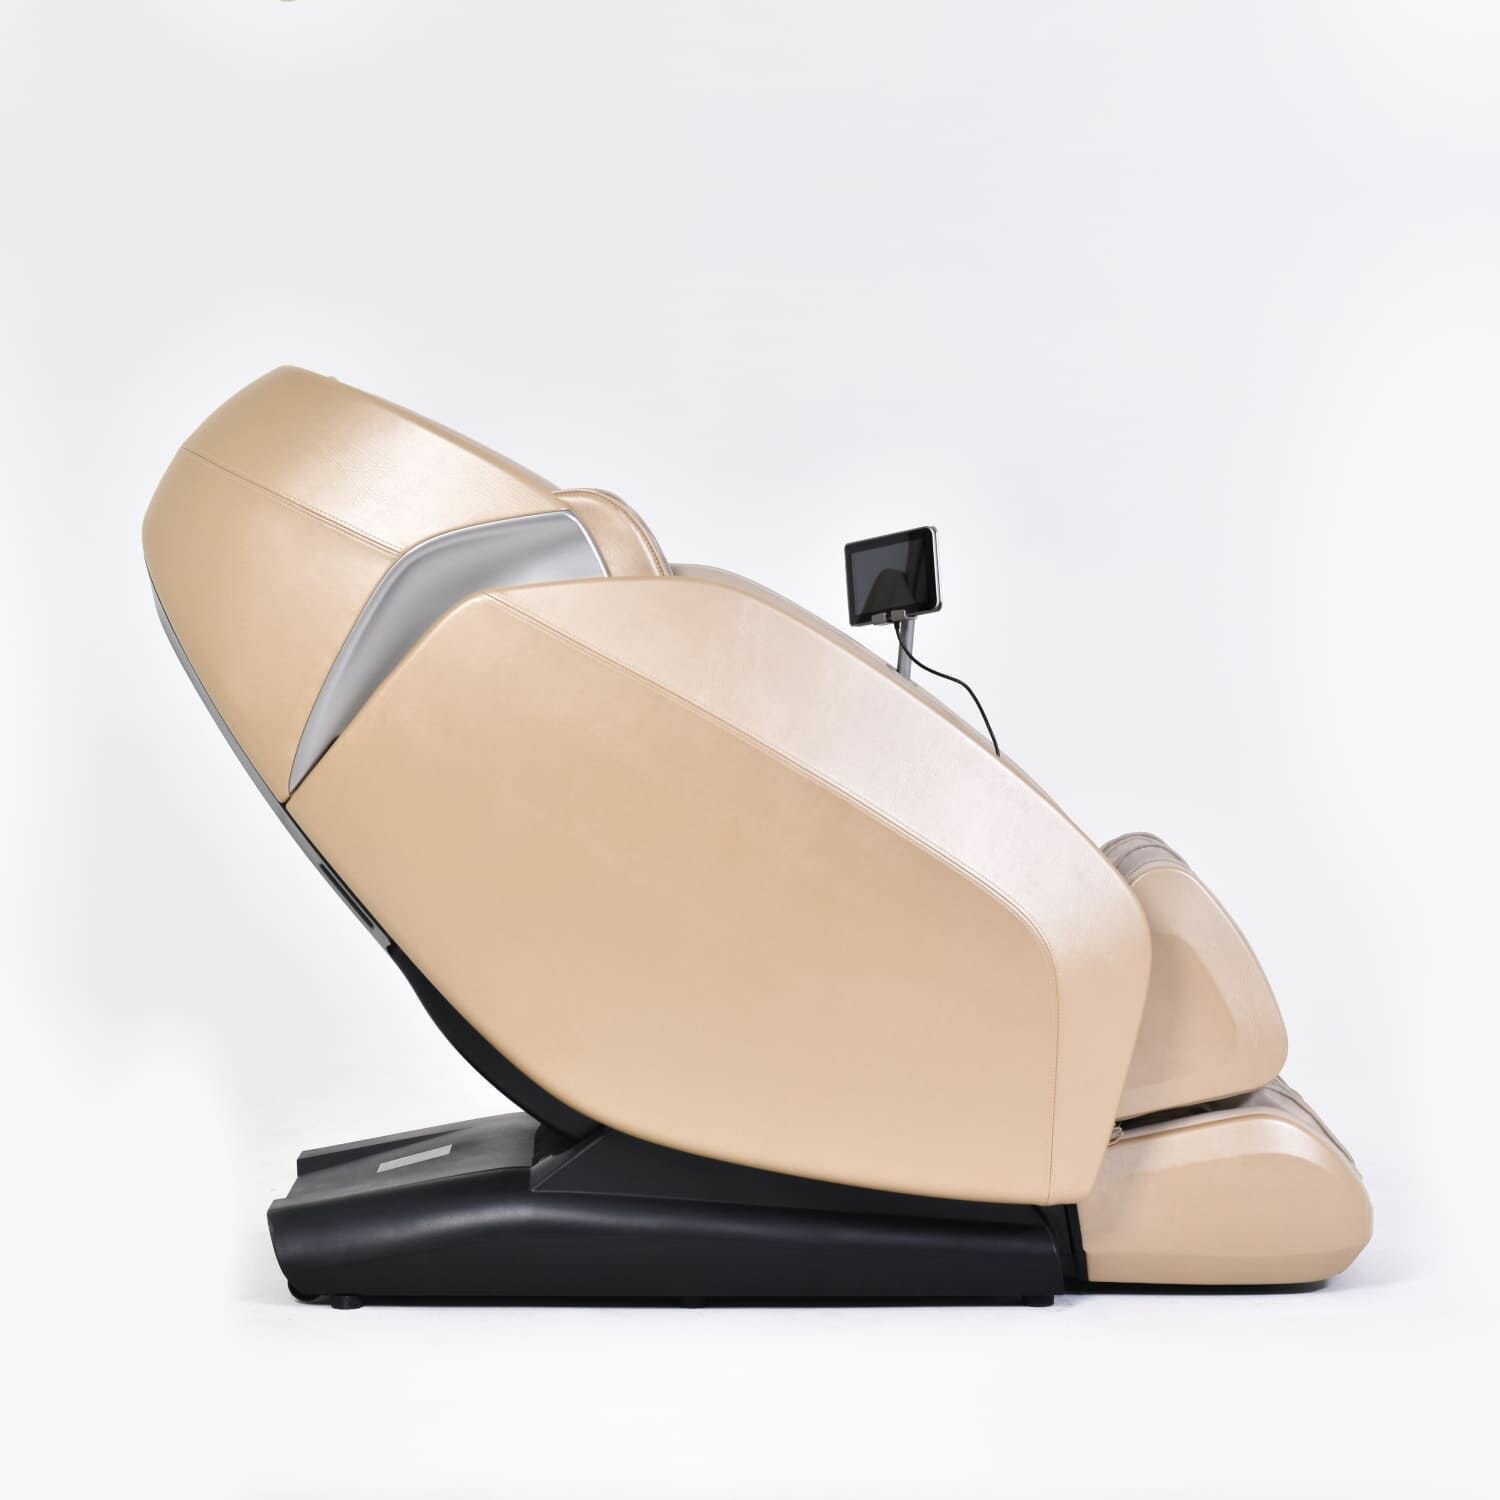 Массажное кресло GESS Oasis массажер для тела 3D массаж сканирование 11 автопрограмм